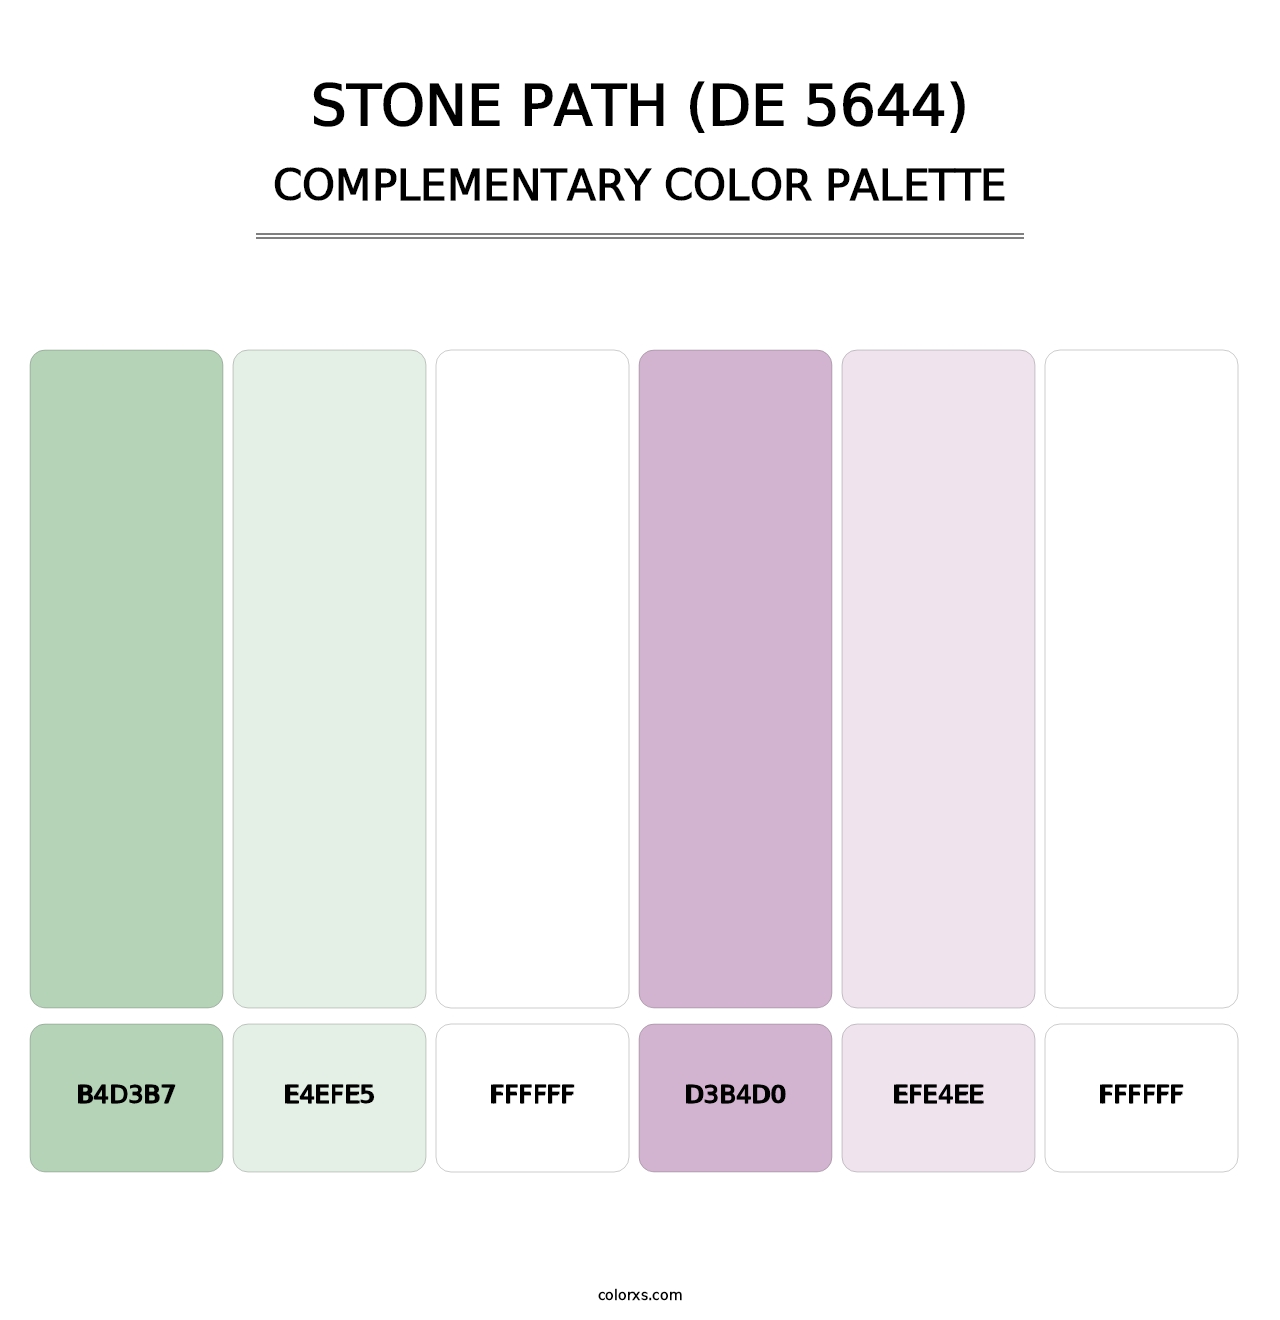 Stone Path (DE 5644) - Complementary Color Palette